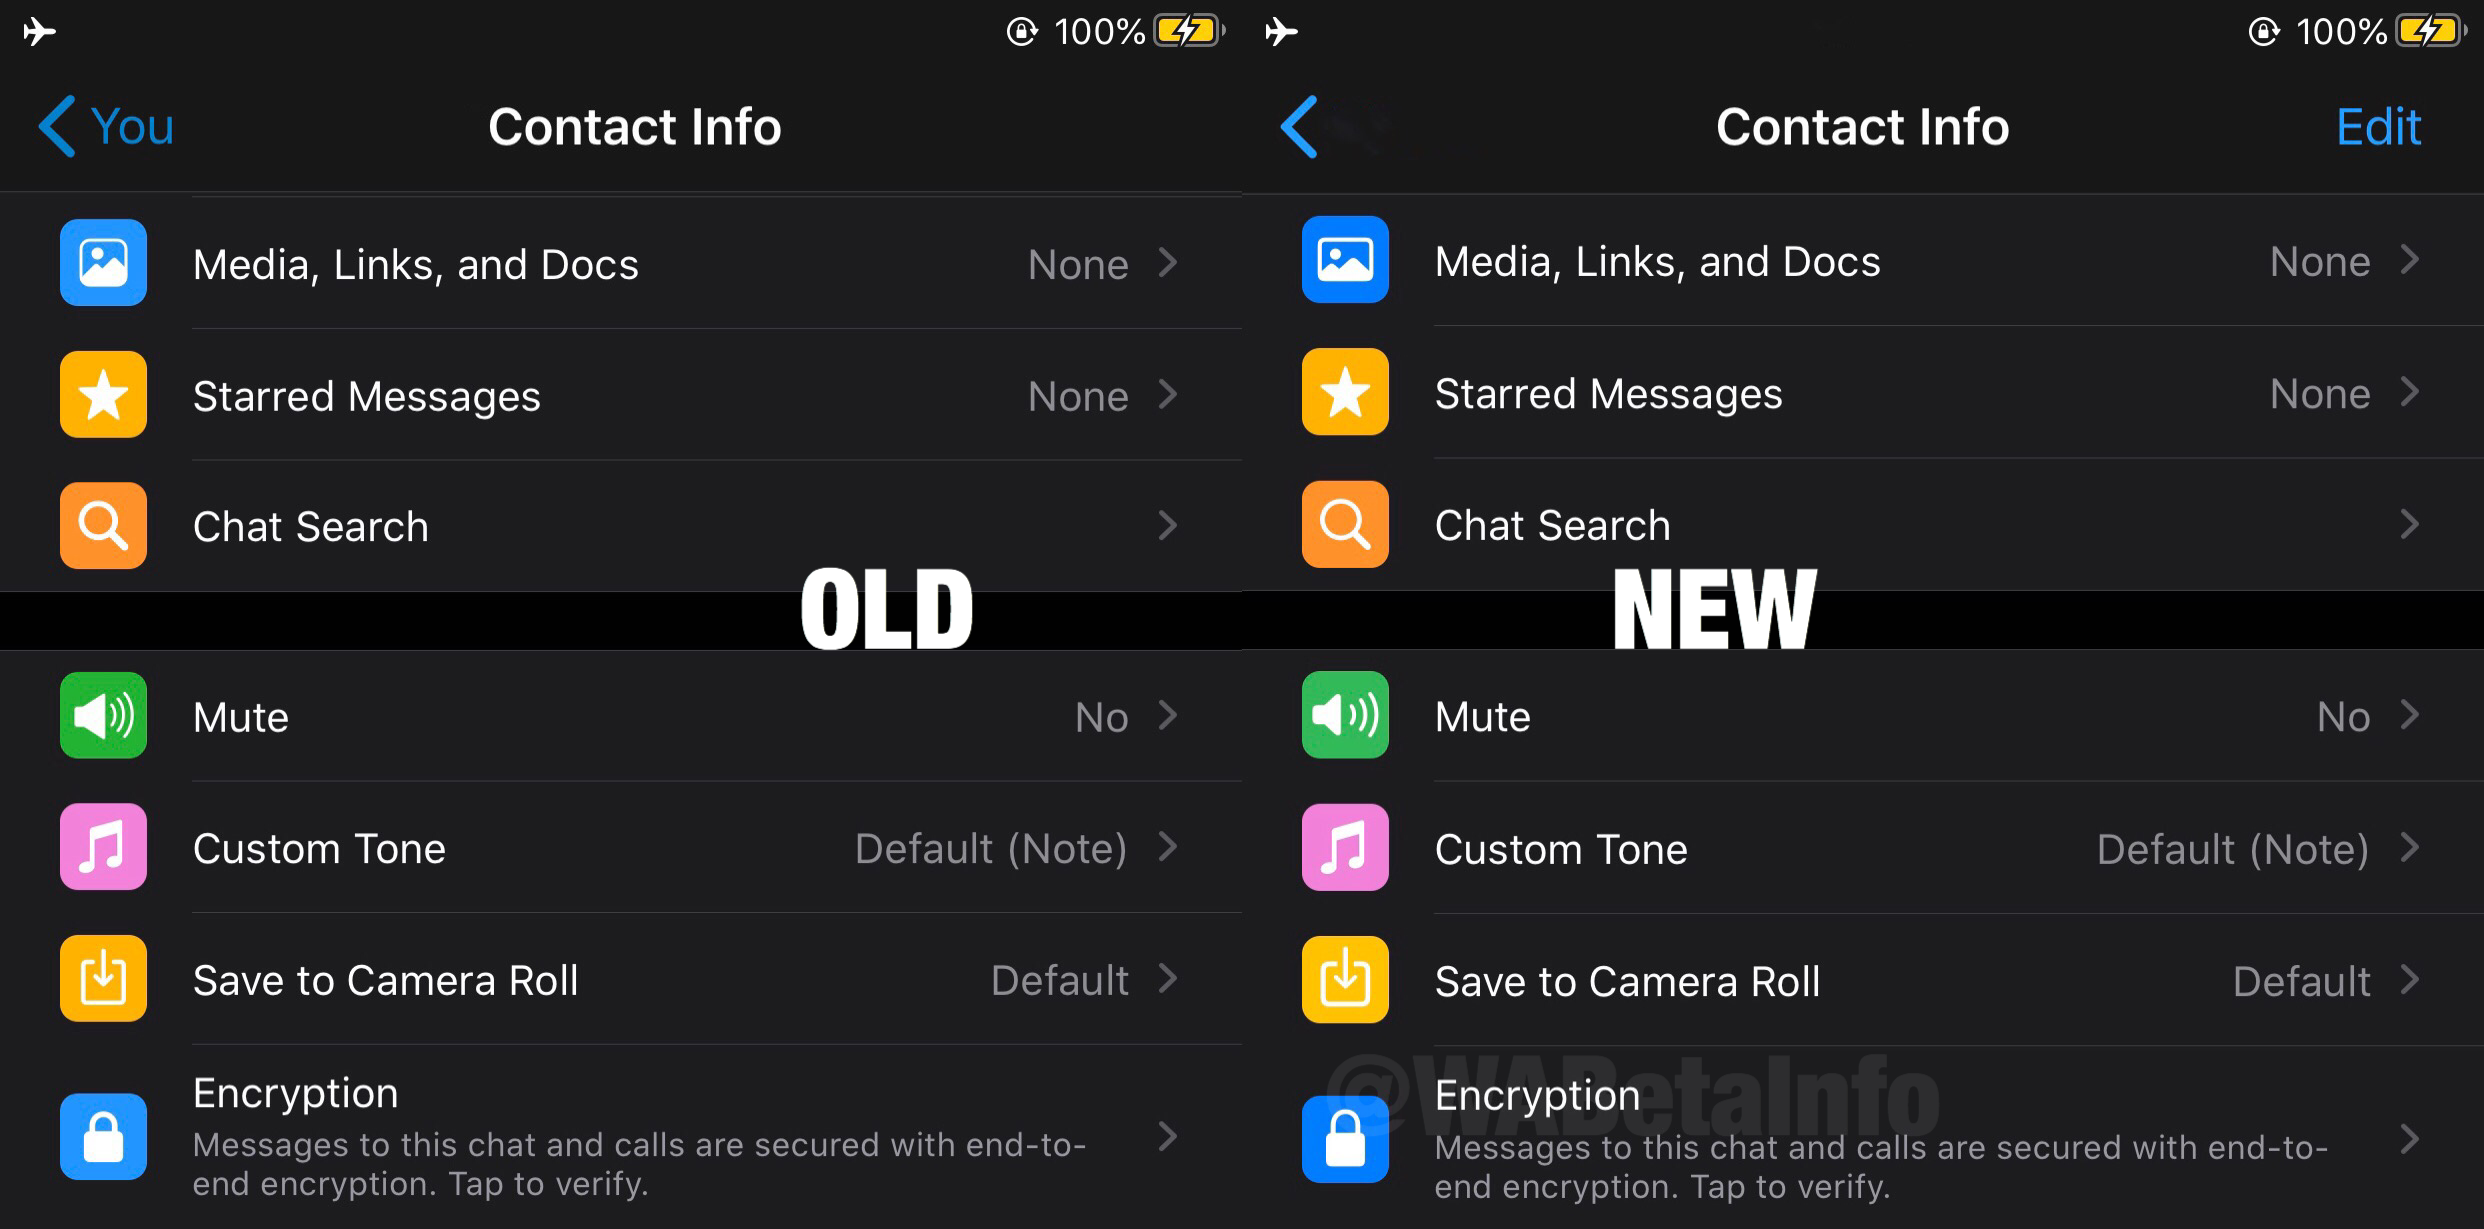 nhựa cây 2WhatsApp cho .20.40.20 Messenger beta: có gì mới? 3 